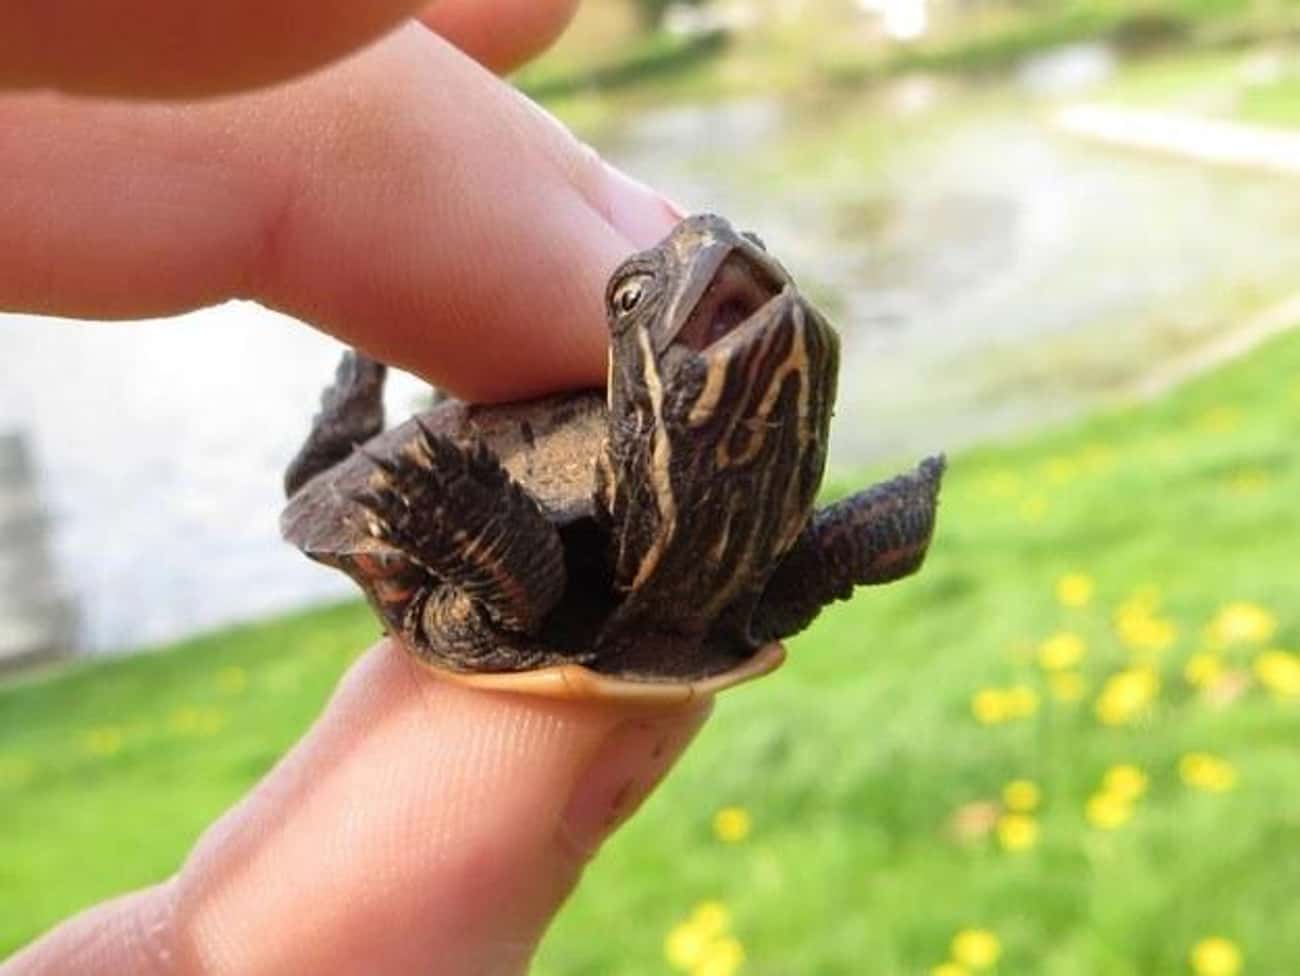 This Ticklish Turtle